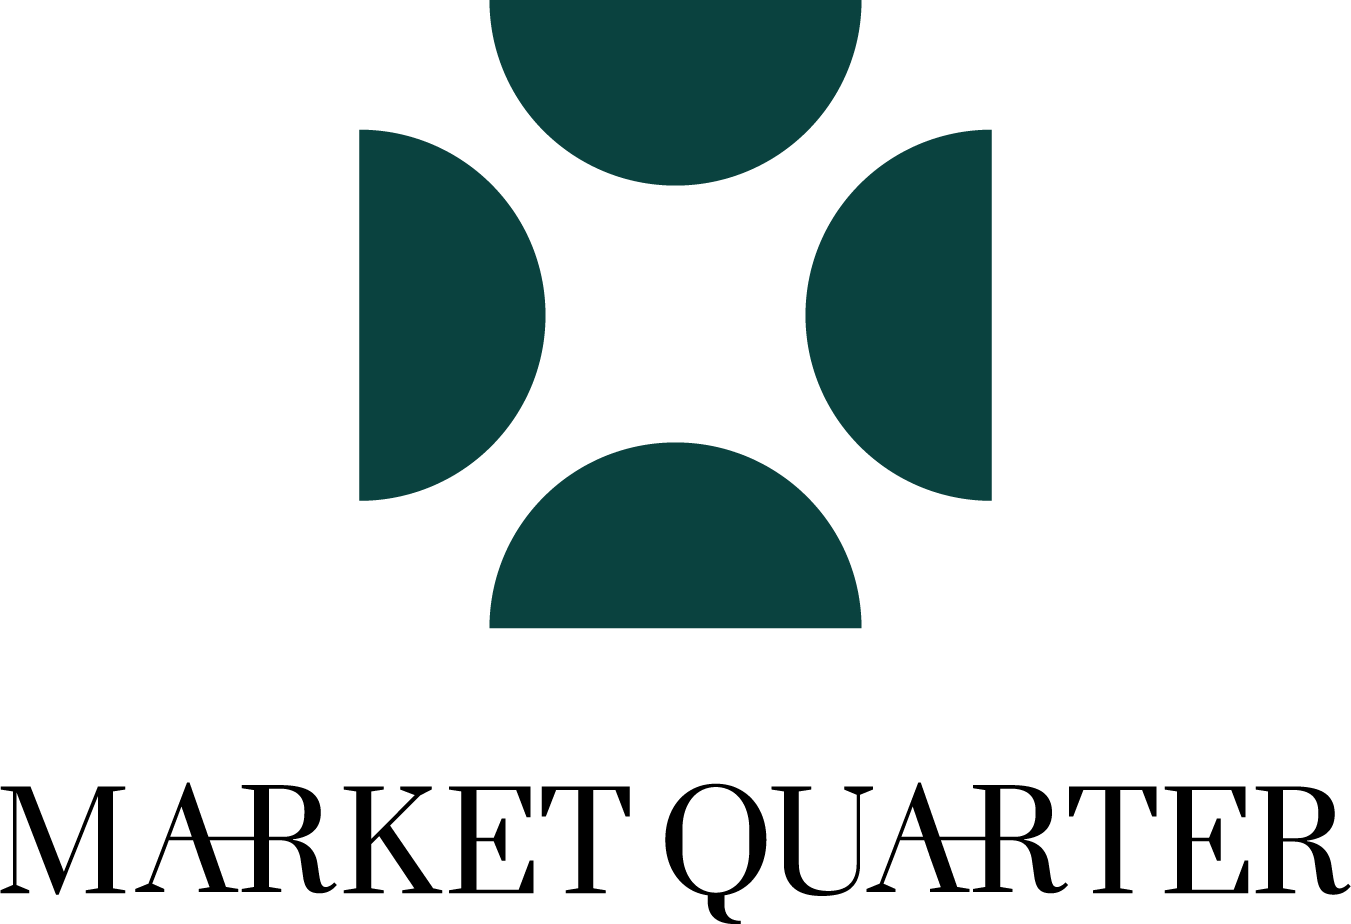 Market Quarter logo.